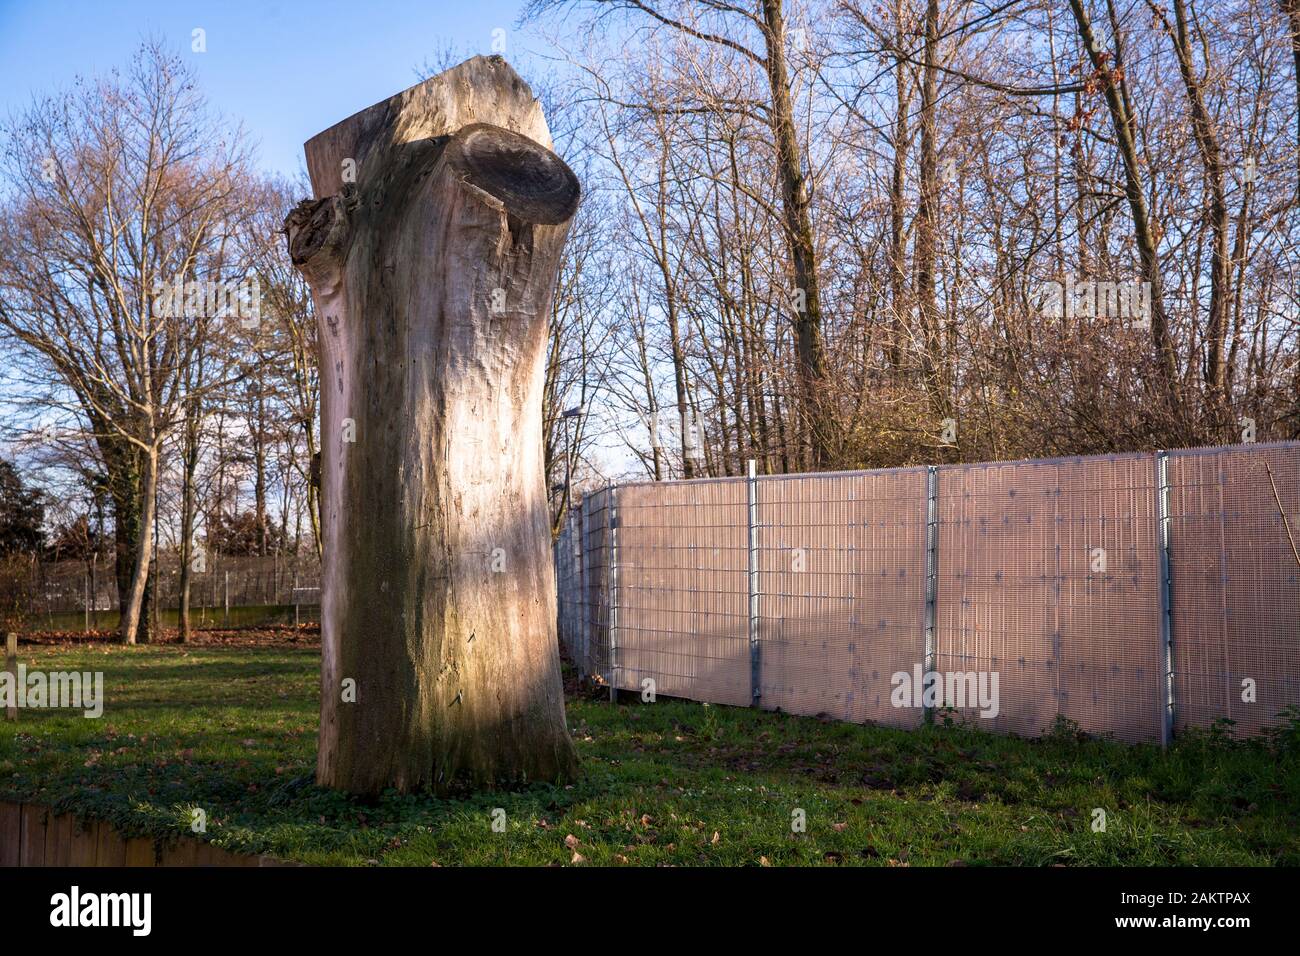 Resti di un grande albero nel distretto di Niehl, Colonia, Germania. Resto eines grossen Baums im Stadtteil Niehl, Koeln, Deutschland. Foto Stock